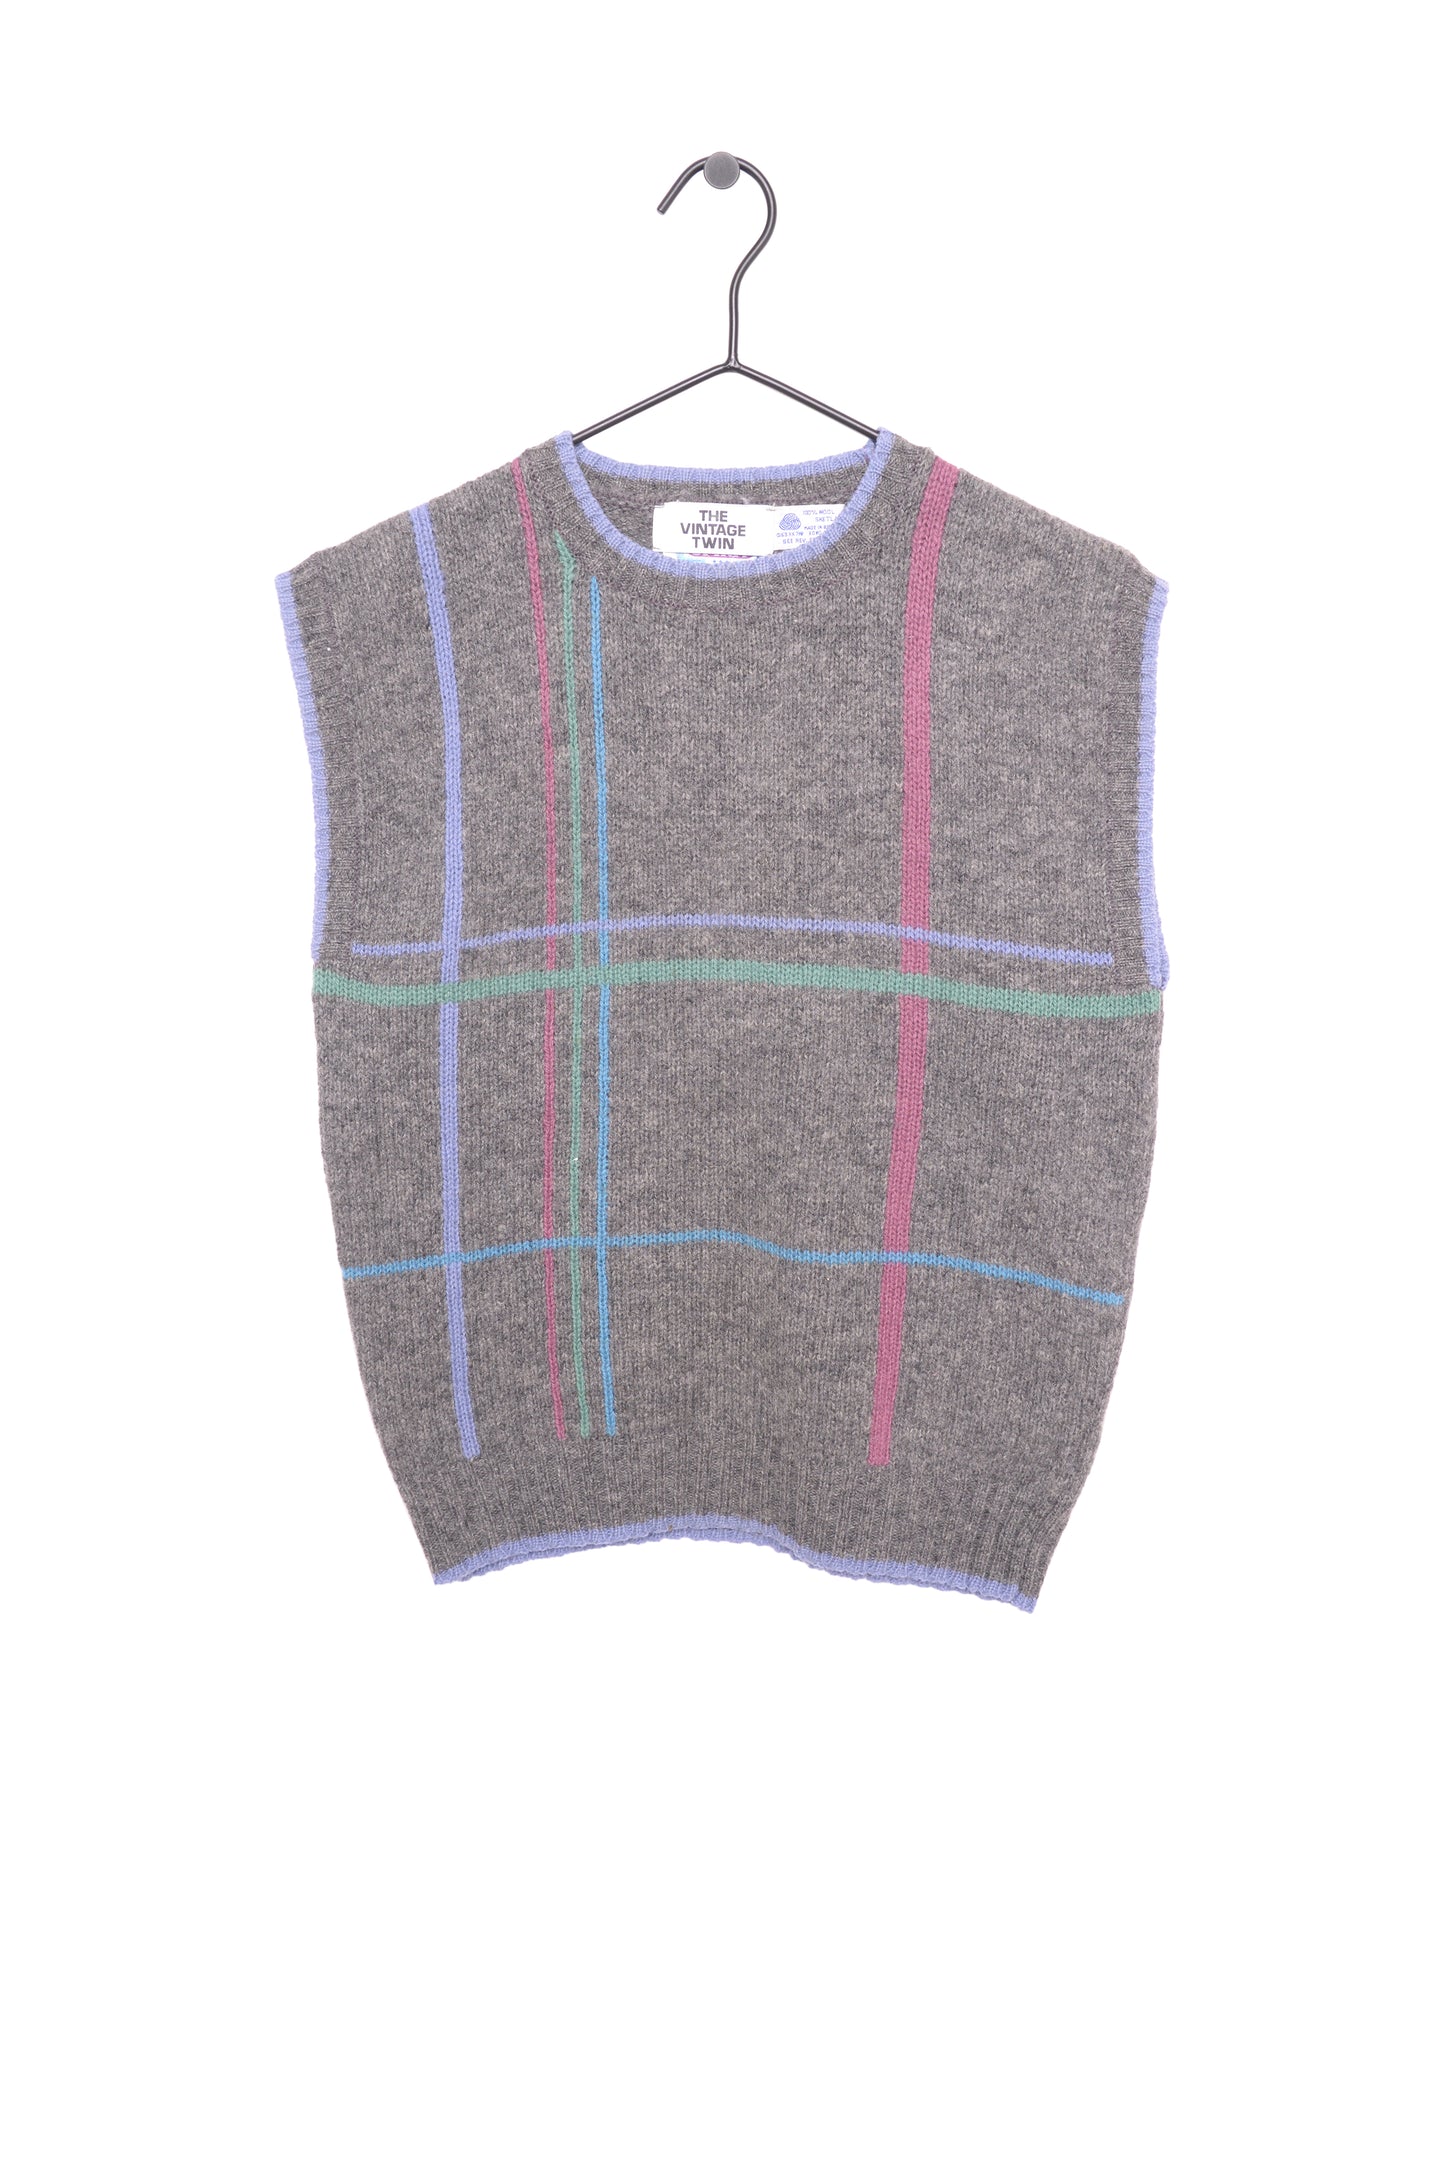 1980s Striped Wool Sweater Vest